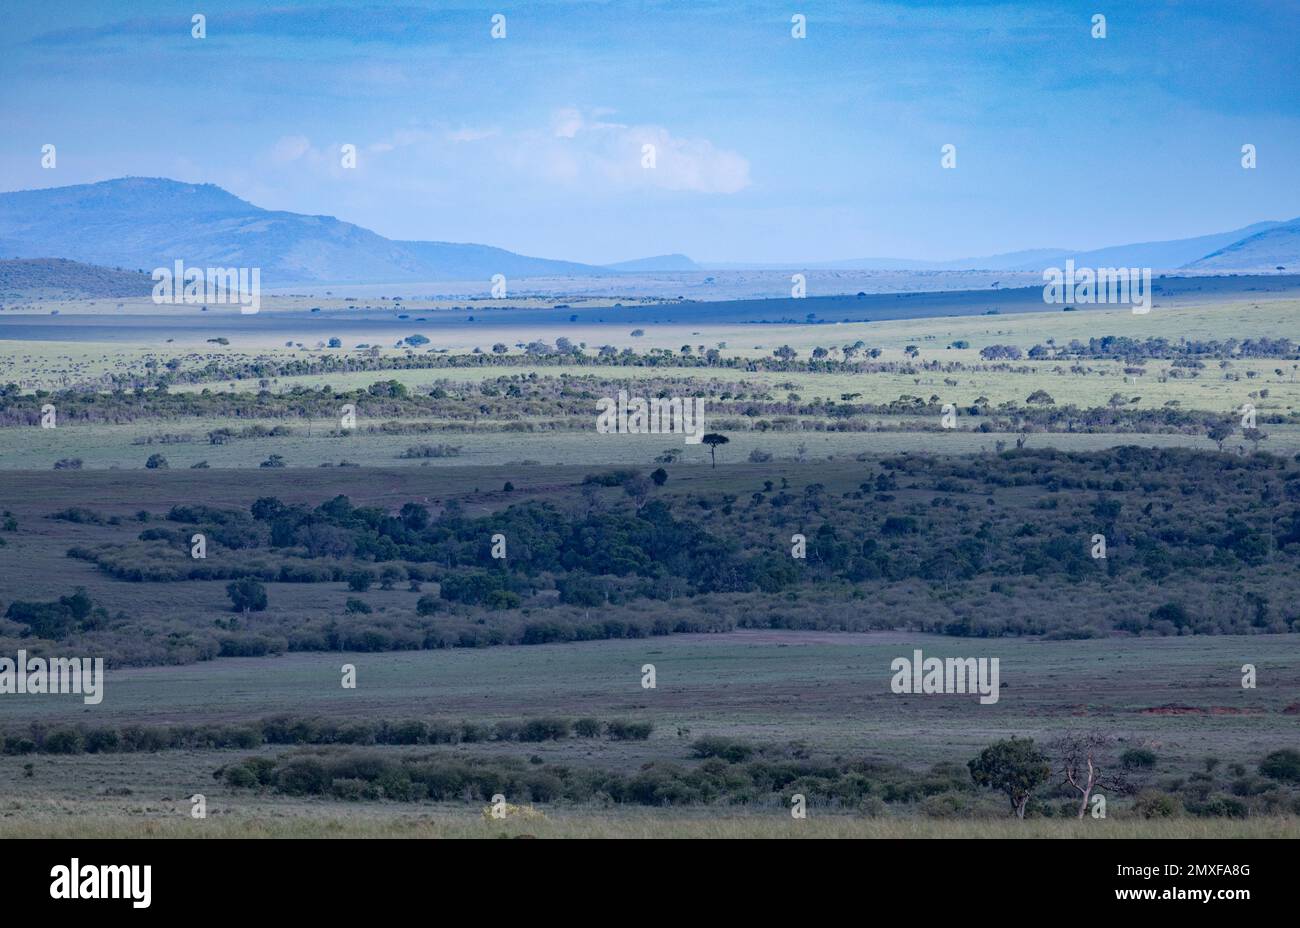 landscape, savannah, Masai Mara National Park, Kenya Stock Photo